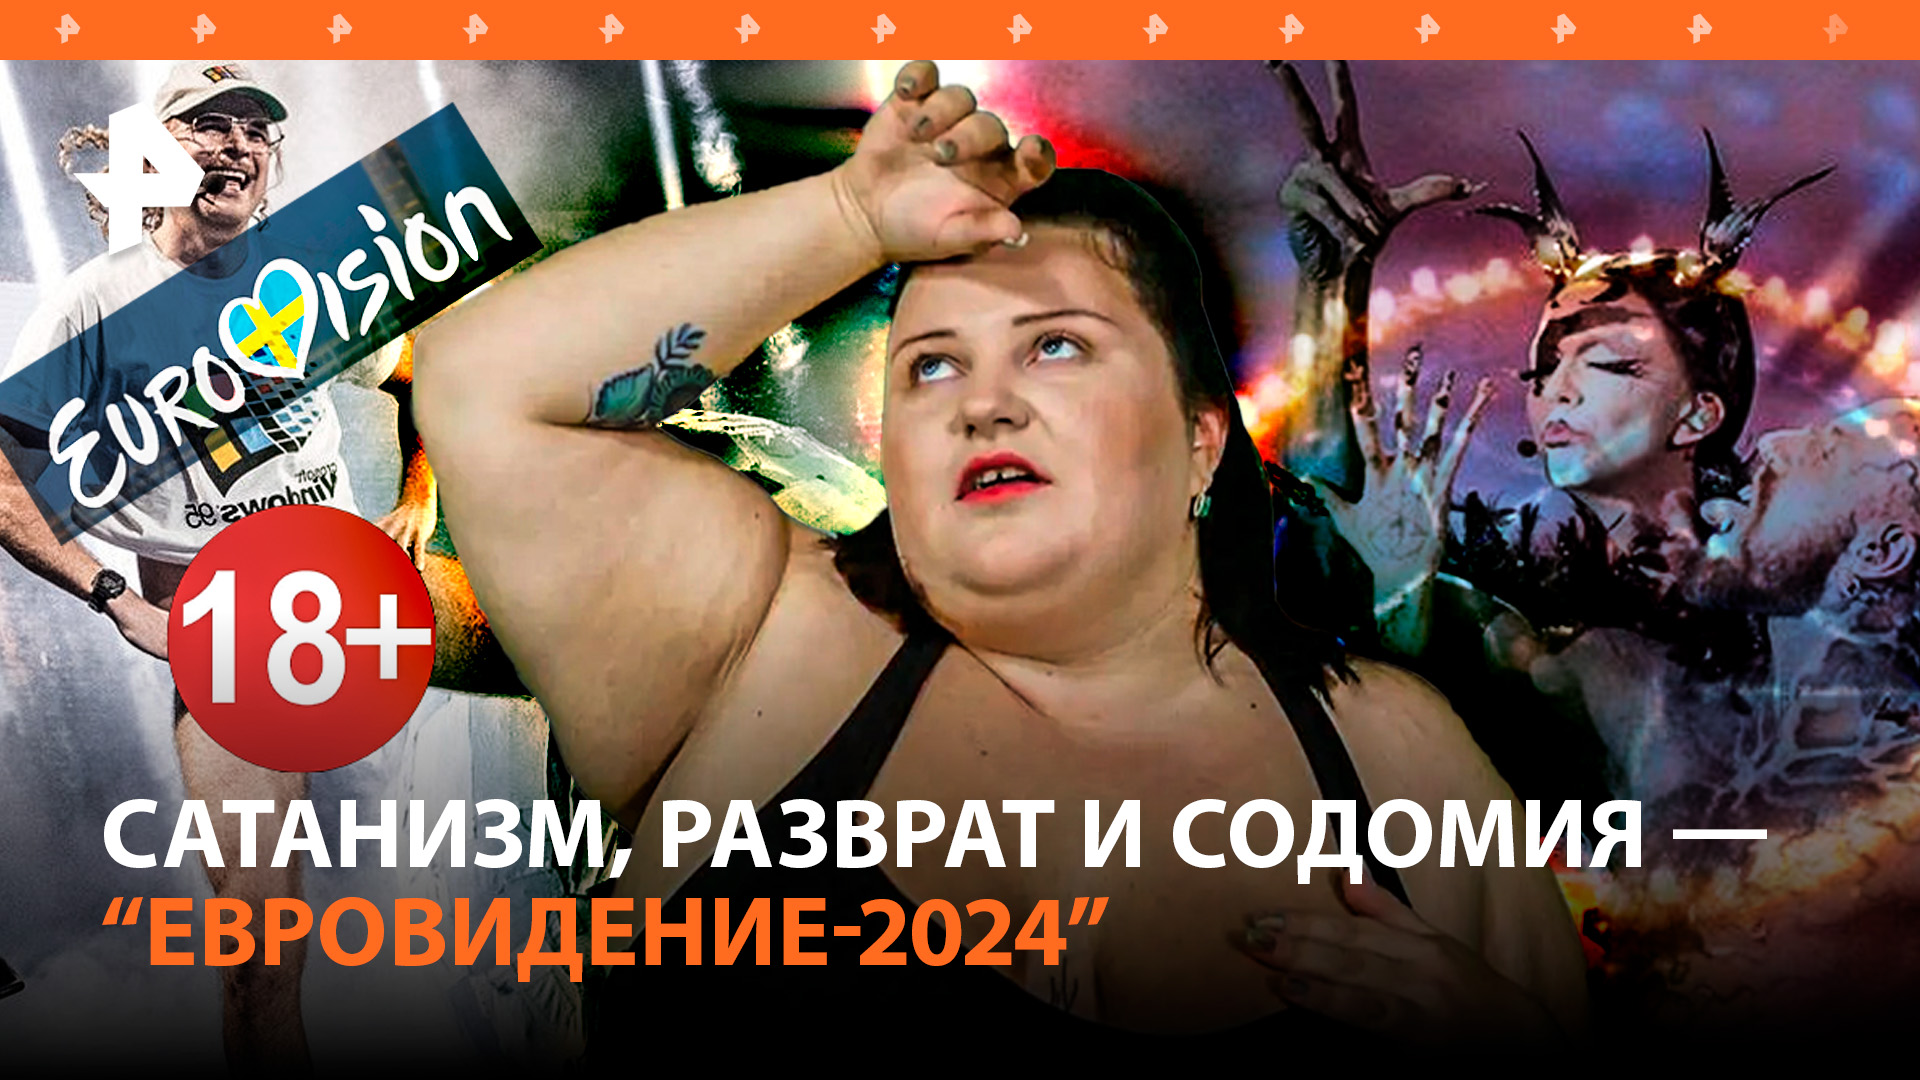 "Сатанавидение-2024": голый финн, пляска ведьмы из Ирландии и украинка в памперсе / РЕН Новости